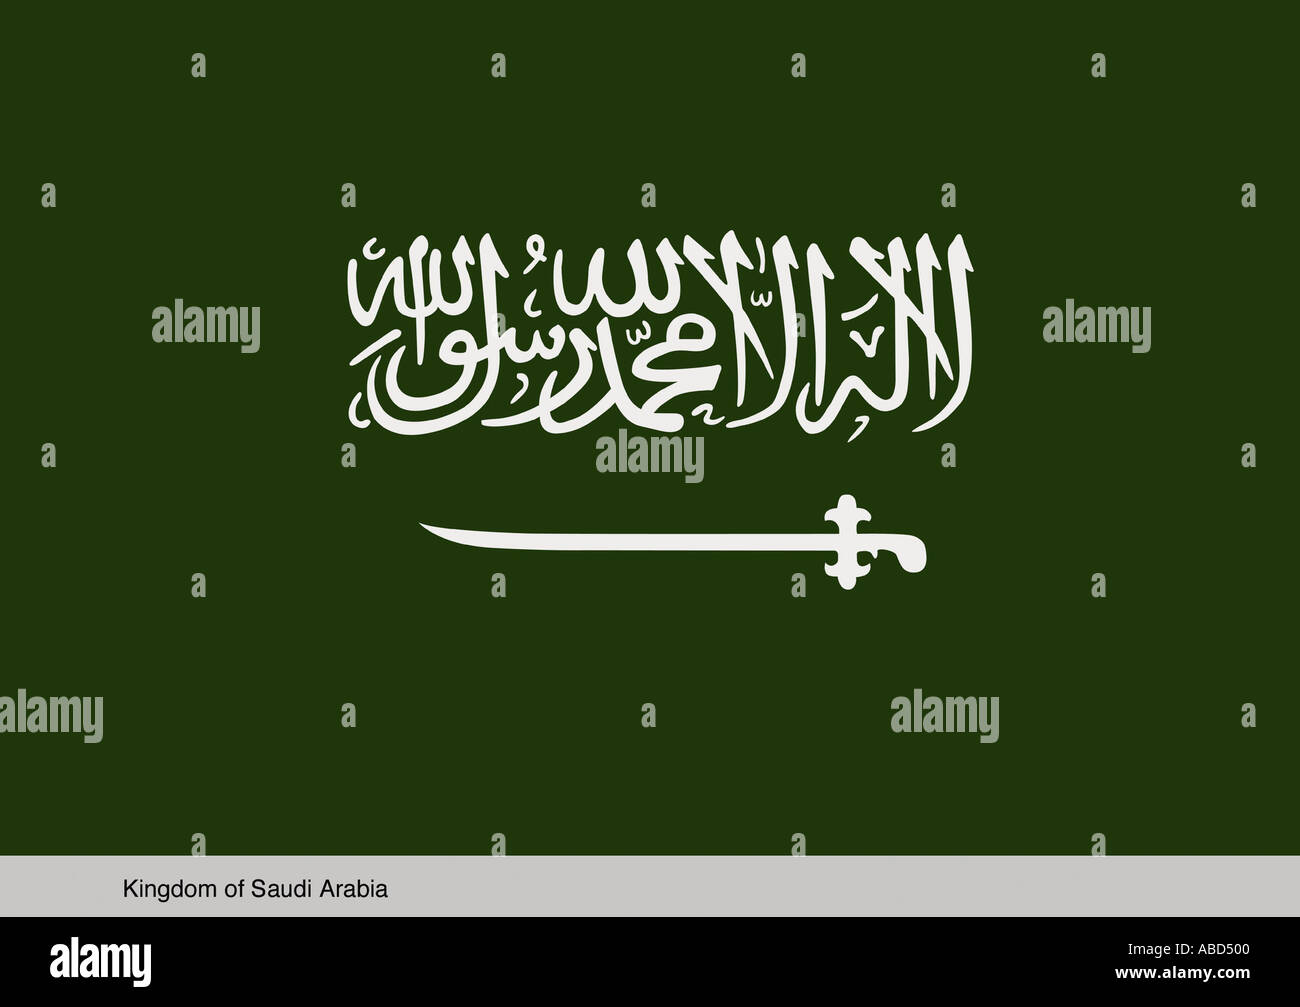 Kingdom of Saudi Arabia Stock Photo